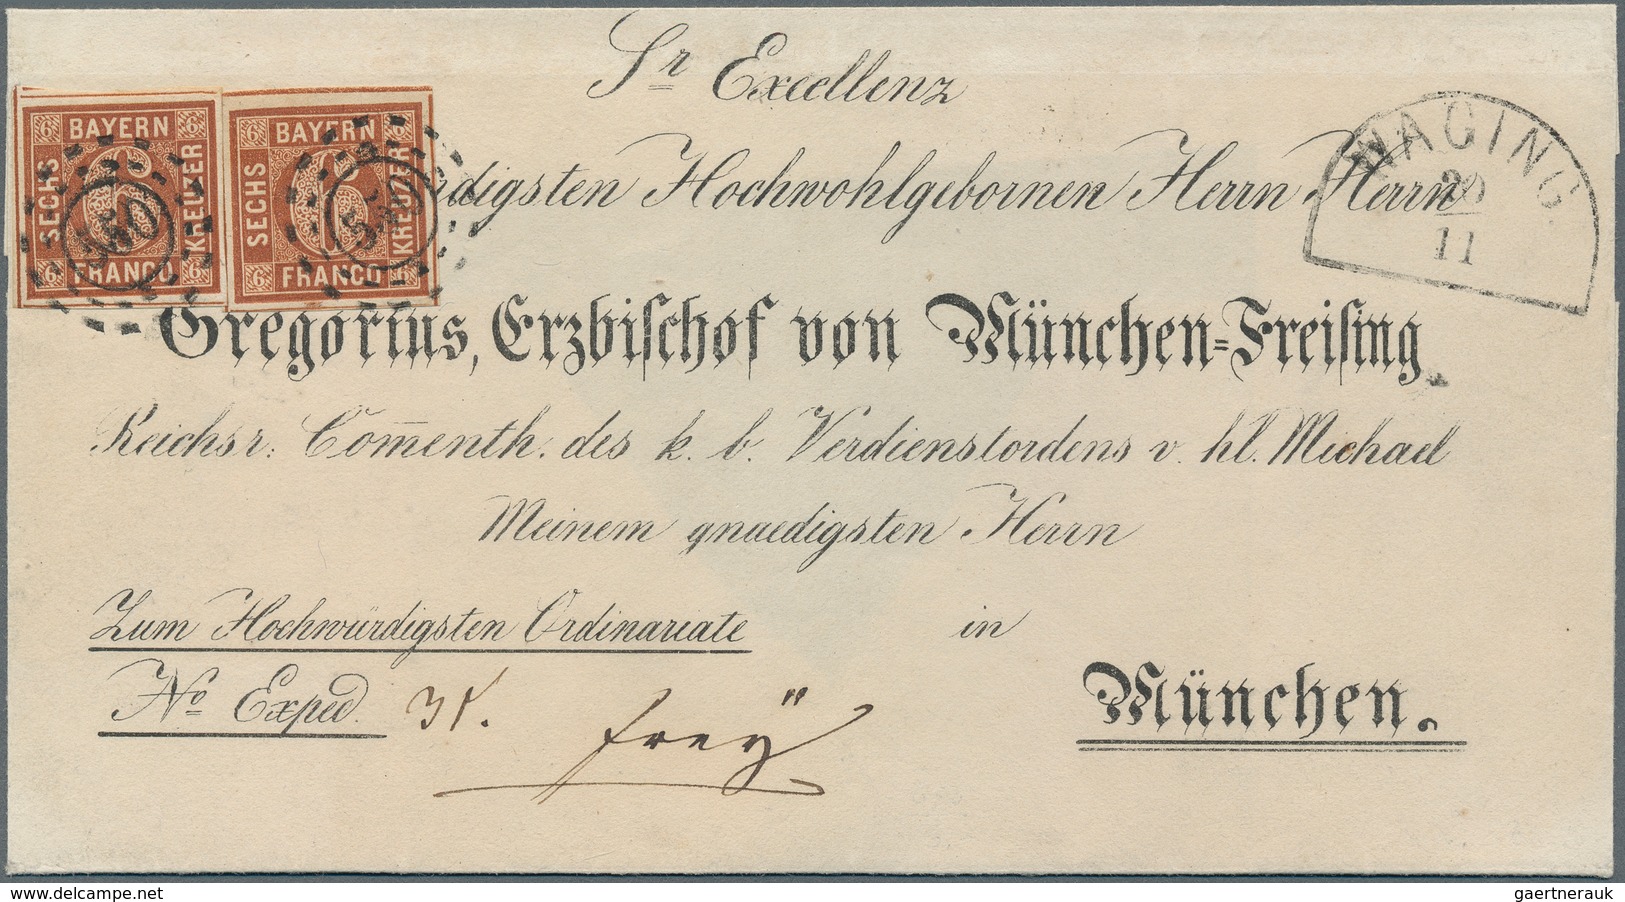 Bayern - Marken und Briefe: Bischofsbriefe 1850/1862 16 sog. Bischofsbriefe, adressiert an Carl Augu